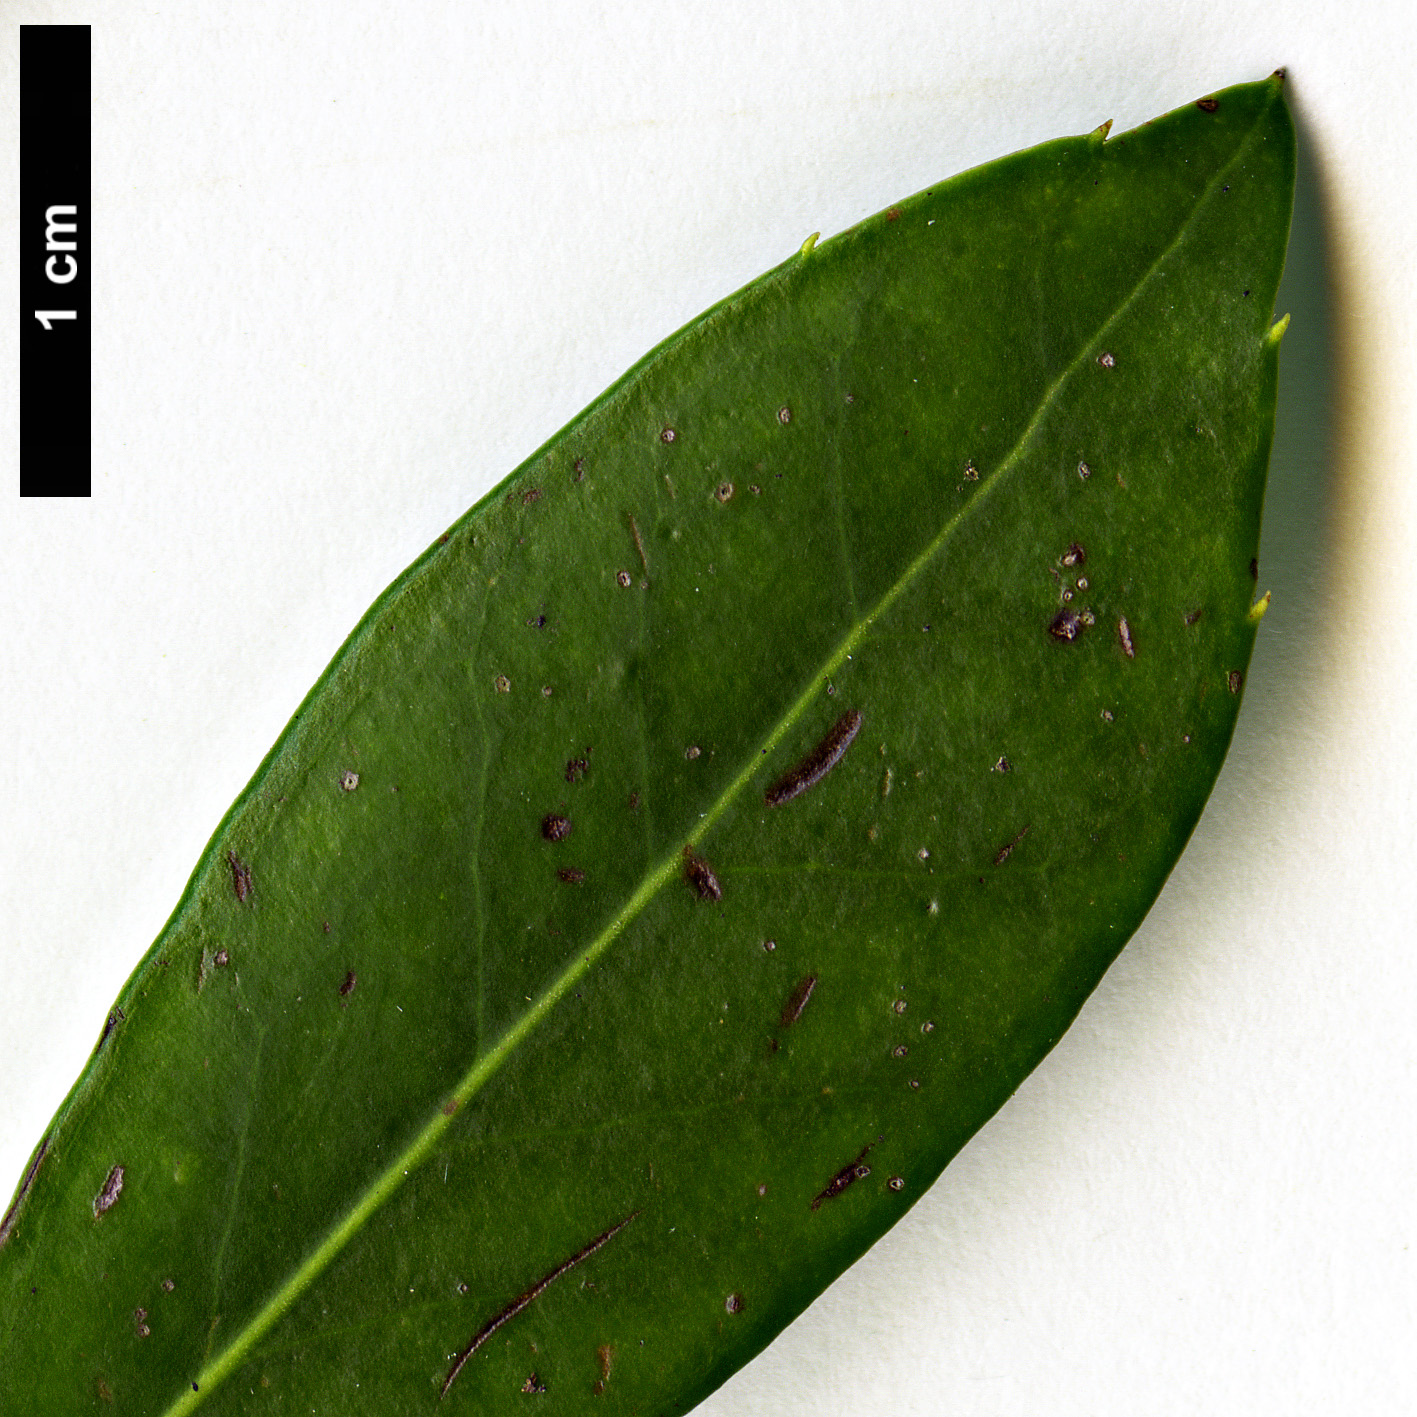 High resolution image: Family: Aquifoliaceae - Genus: Ilex - Taxon: coriacea